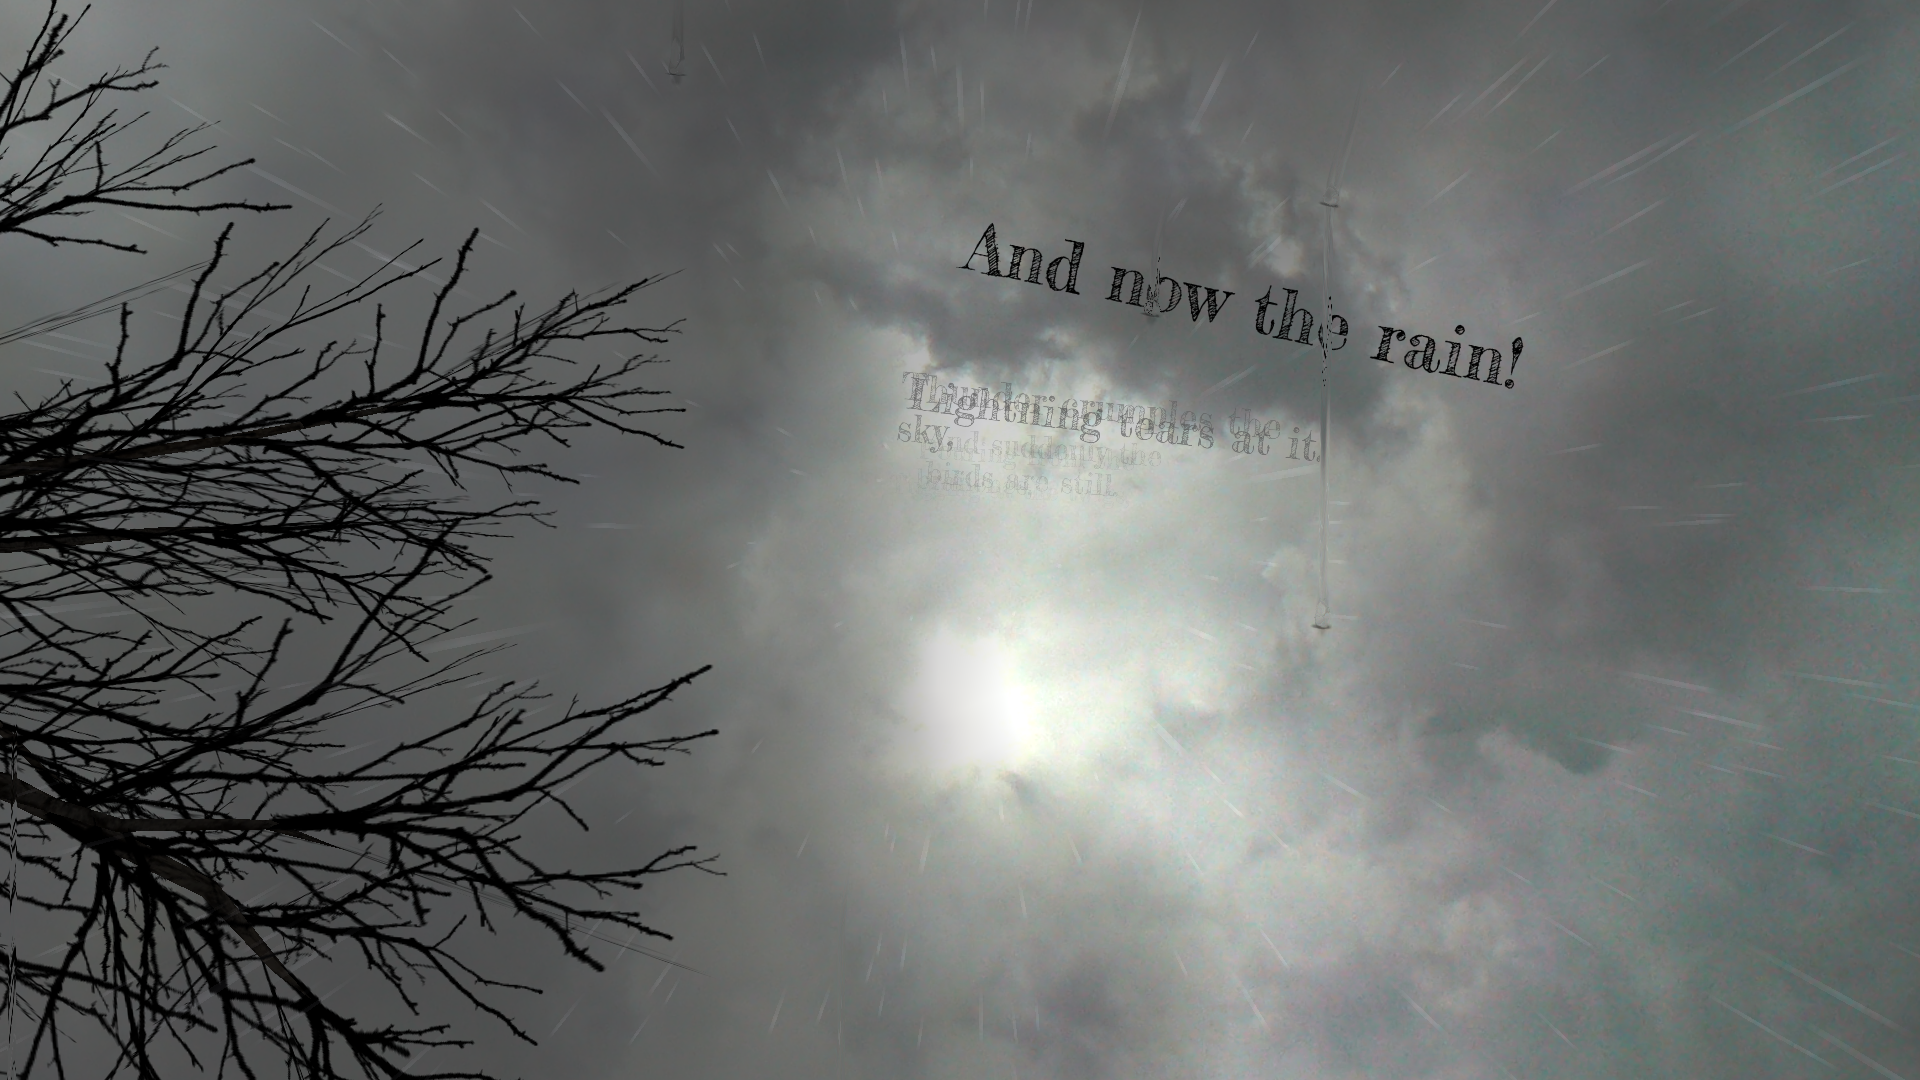 Screenshot from Strange Rain